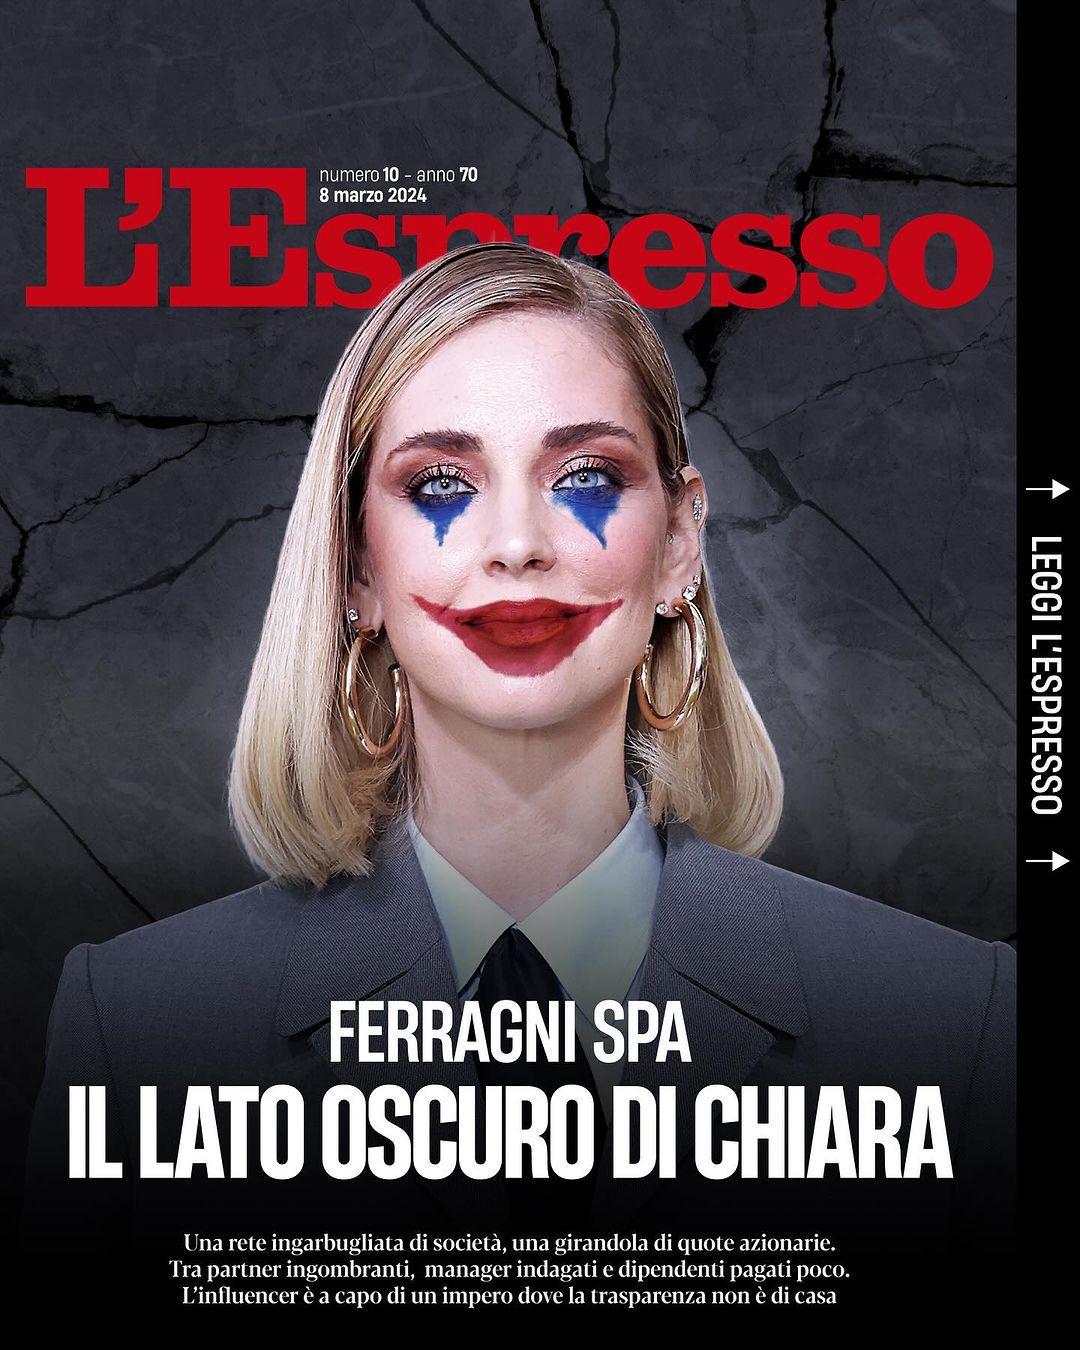 Chiara Ferragni: Ιταλικό περιοδικό την παρουσιάζει στο εξώφυλλό του ως Jocker και την εκθέτει ανεπανόρθωτα